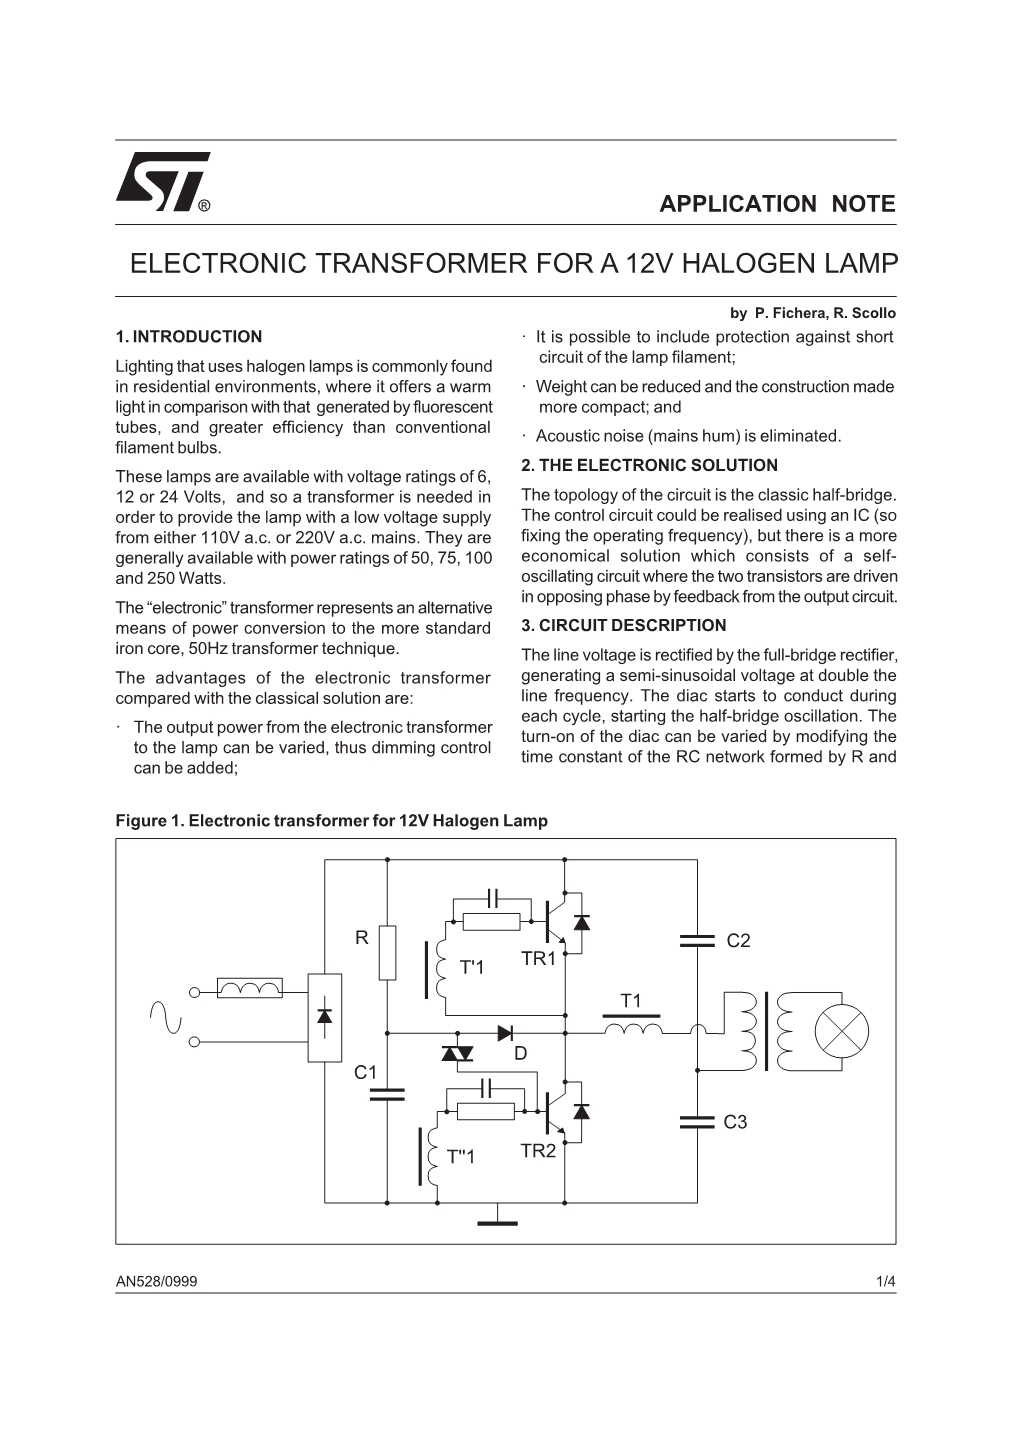 Electronic Transformer for a 12V Halogen Lamp